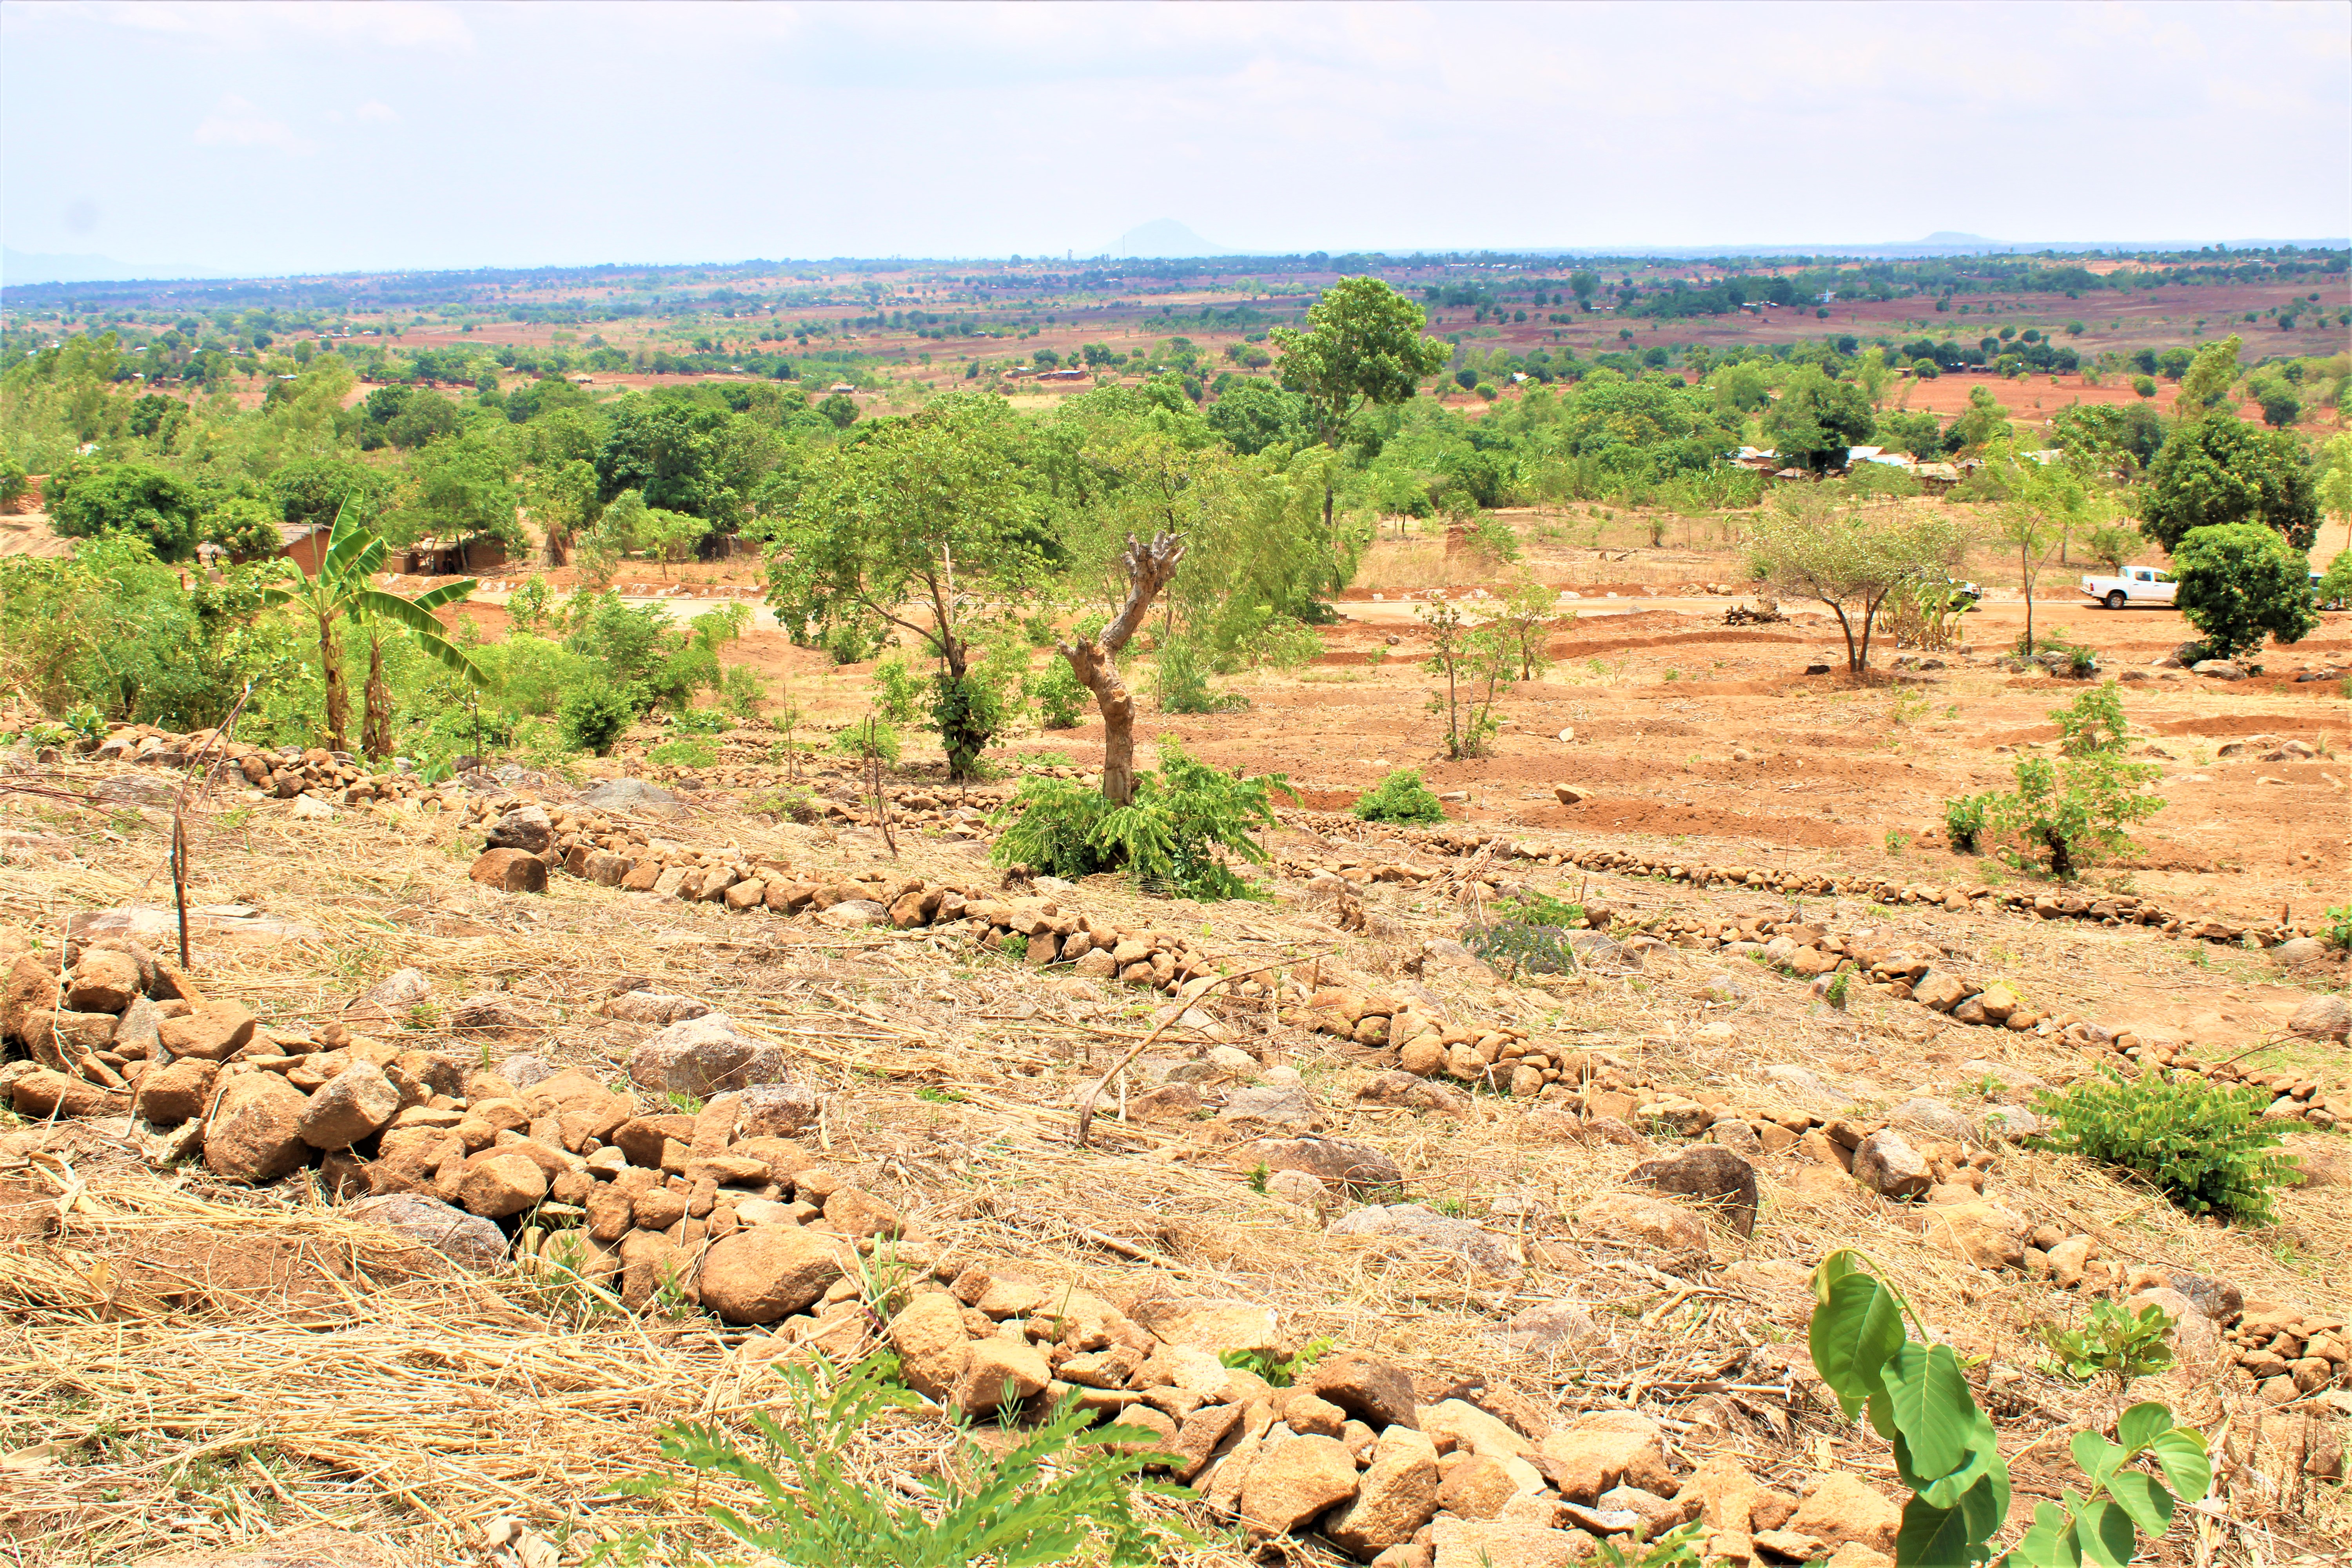 Les communautés ont construit des digues en pierre pour contrôler l'écoulement de l'eau. (Crédit : Felix Malamula, ERASP/PRIDE)